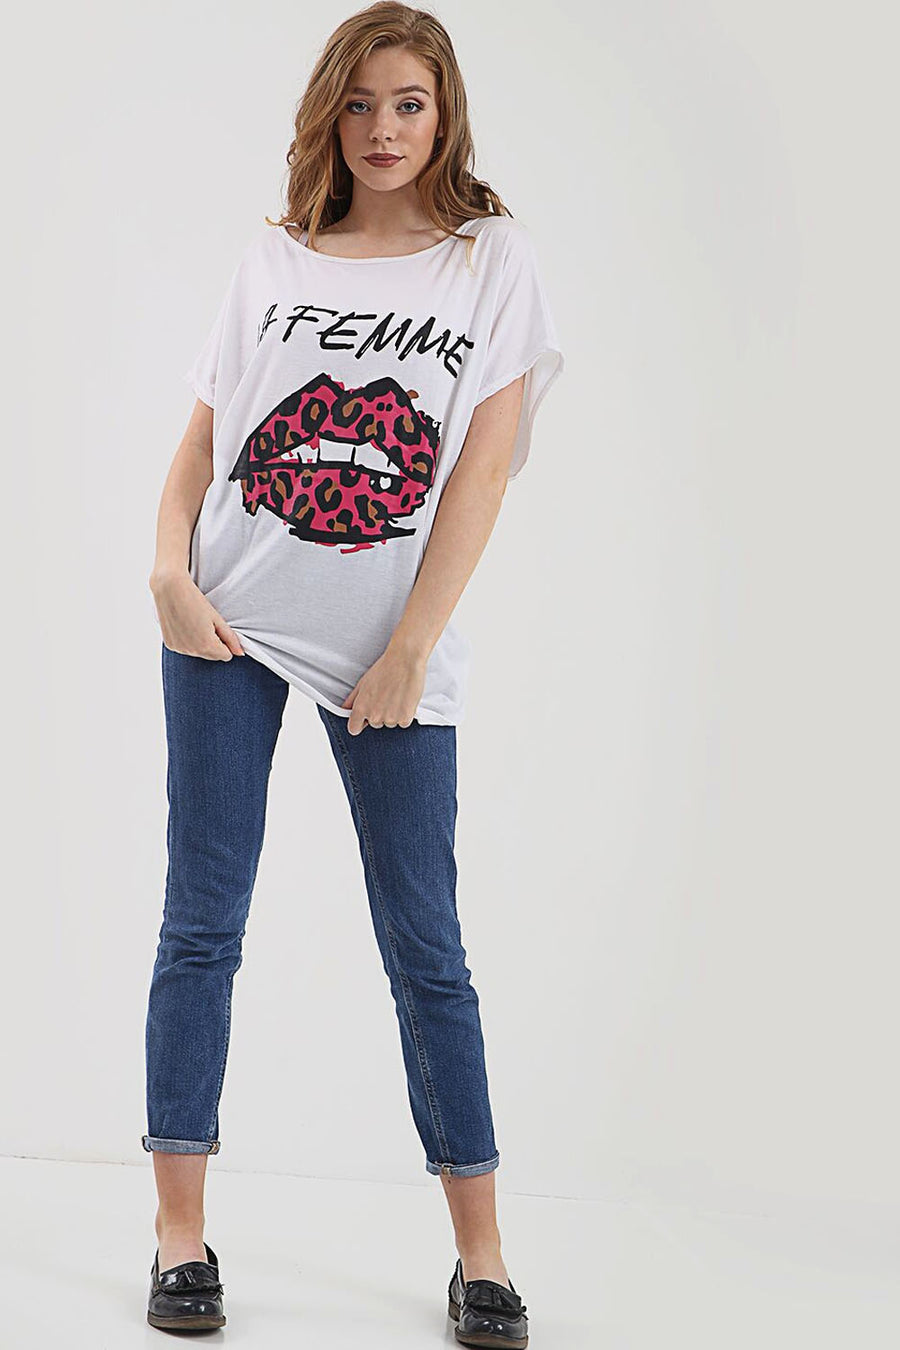 La Femme Graphic Print Oversize White Tshirt - bejealous-com